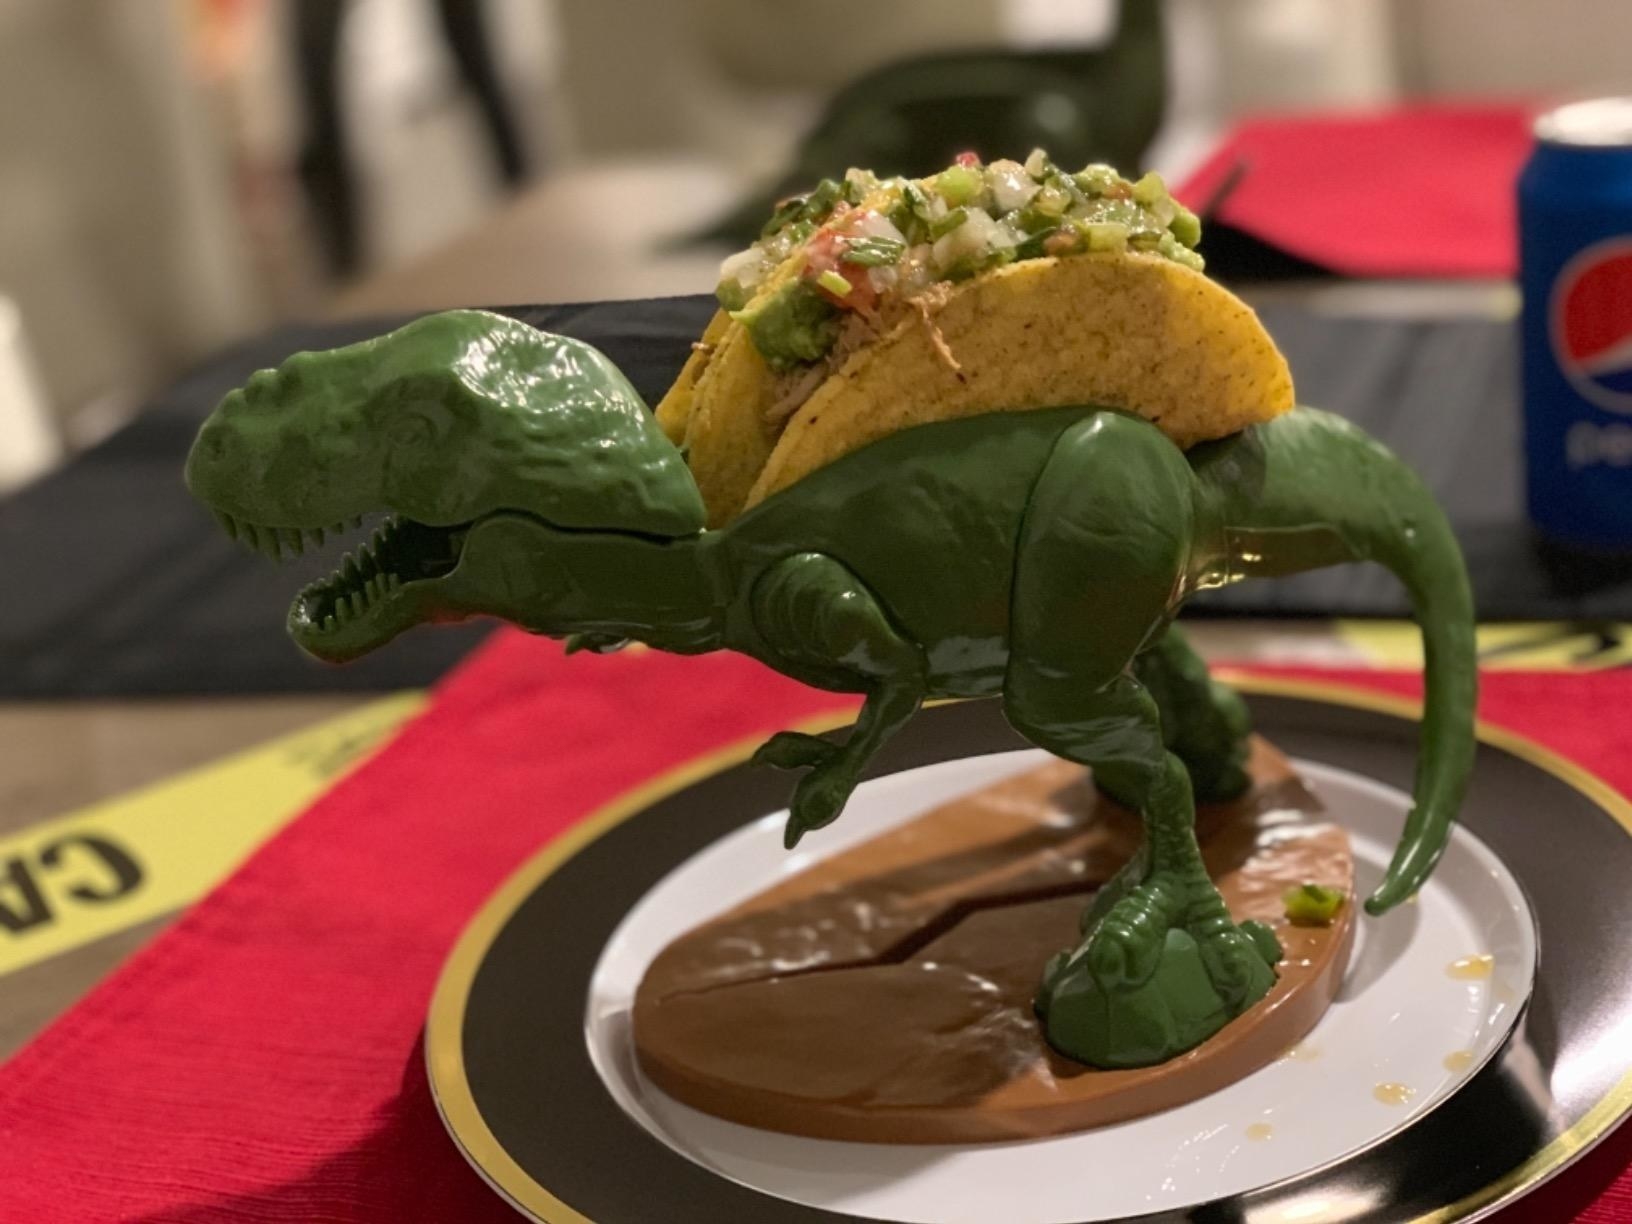 评论家的照片霸王龙taco持有人与墨西哥煎玉米卷”class=